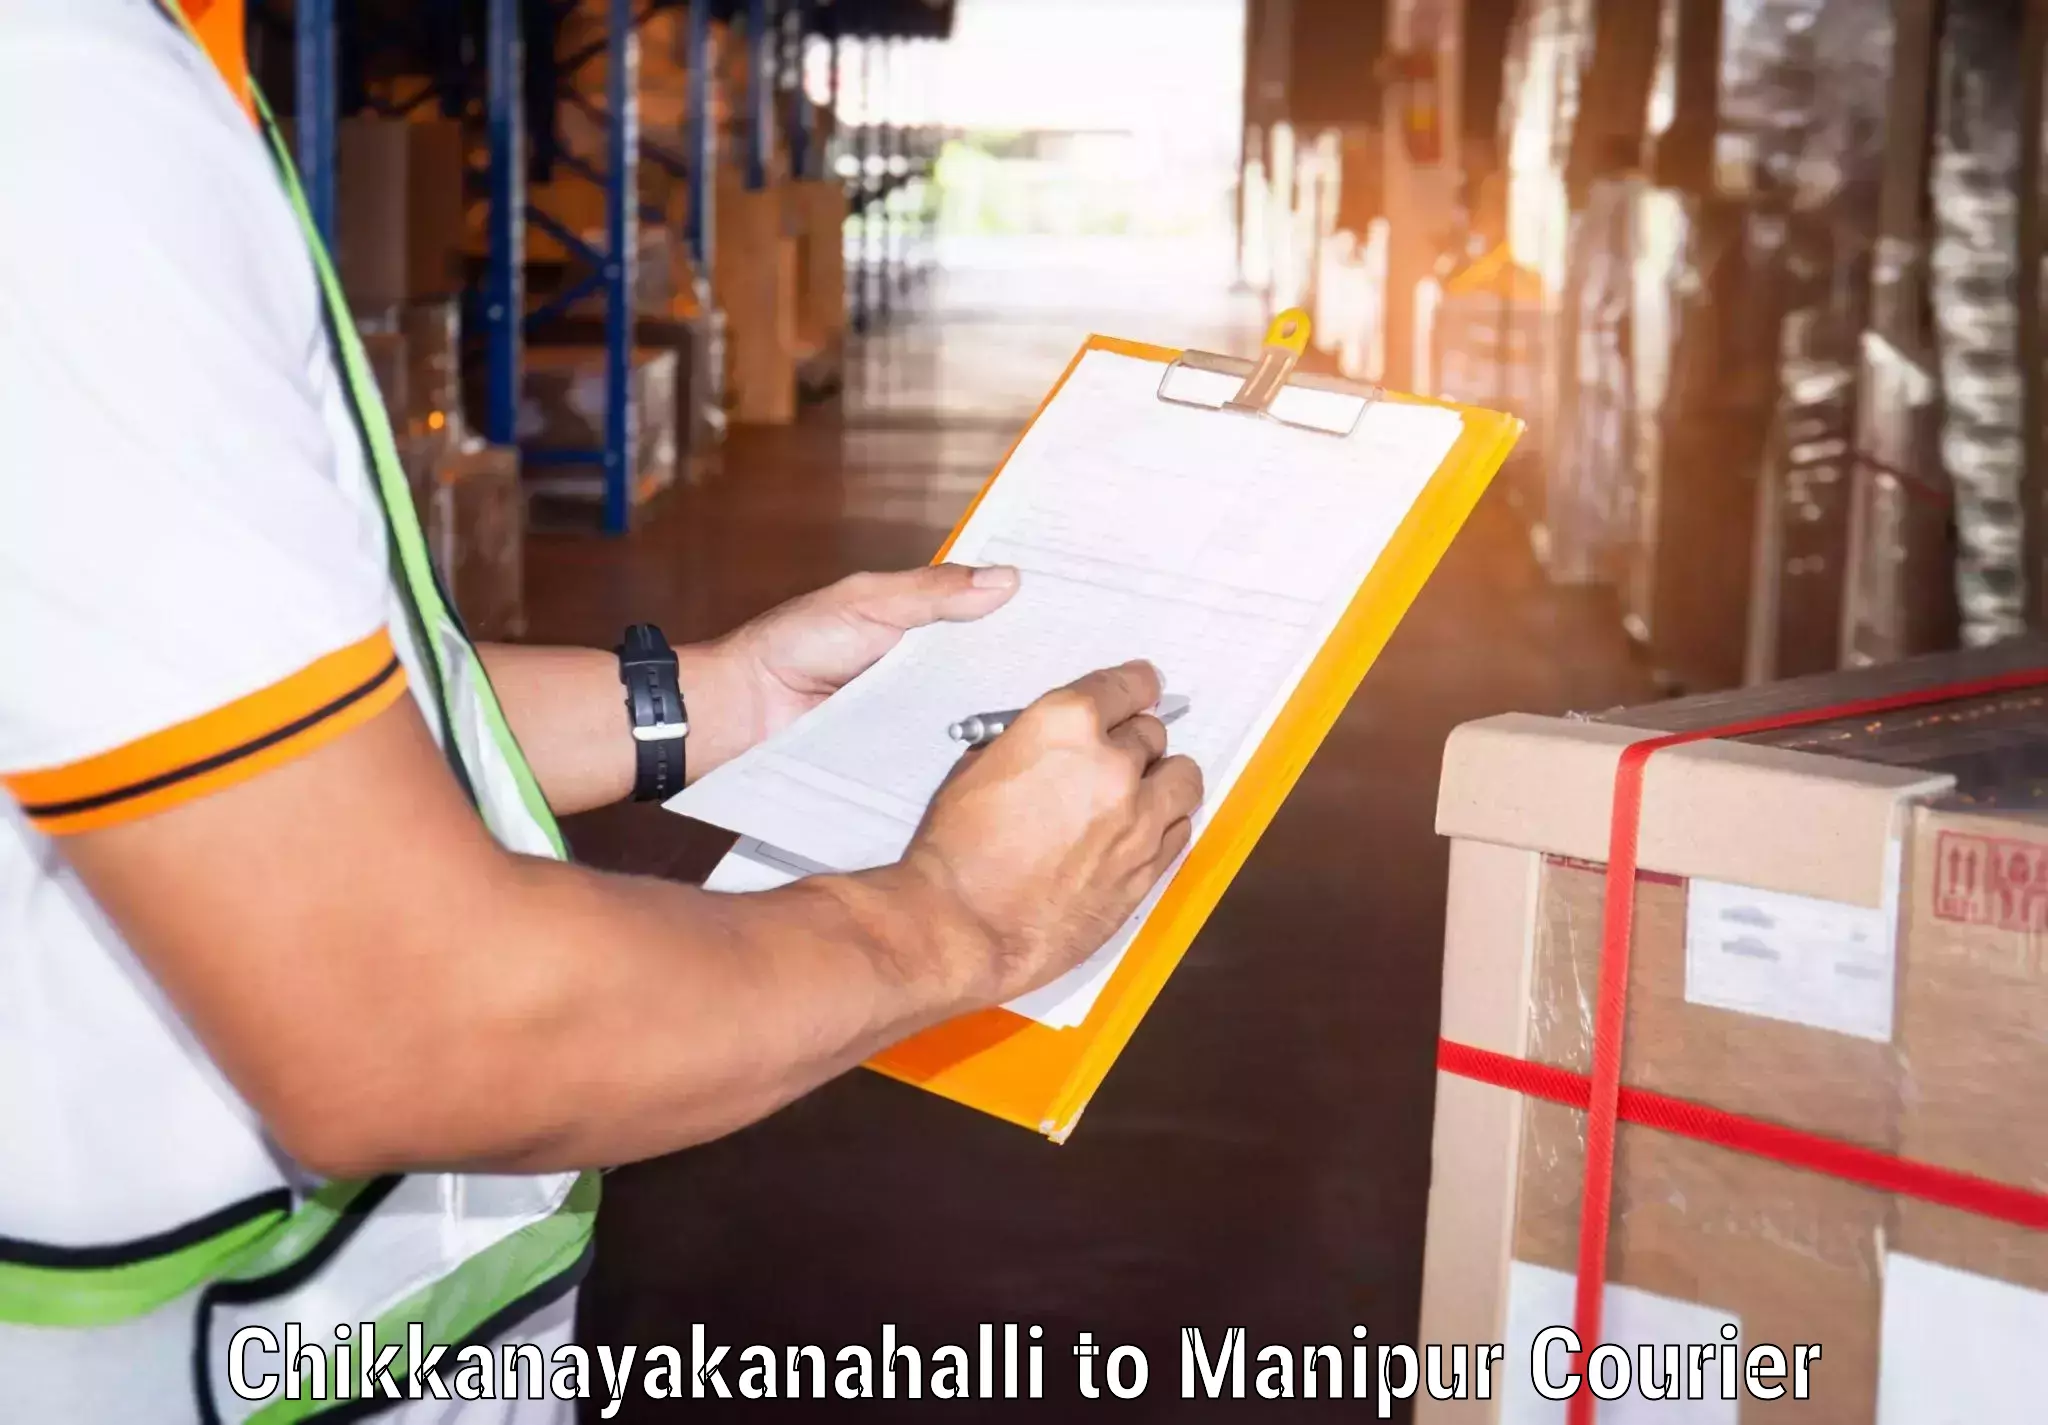 Next-day freight services Chikkanayakanahalli to NIT Manipur